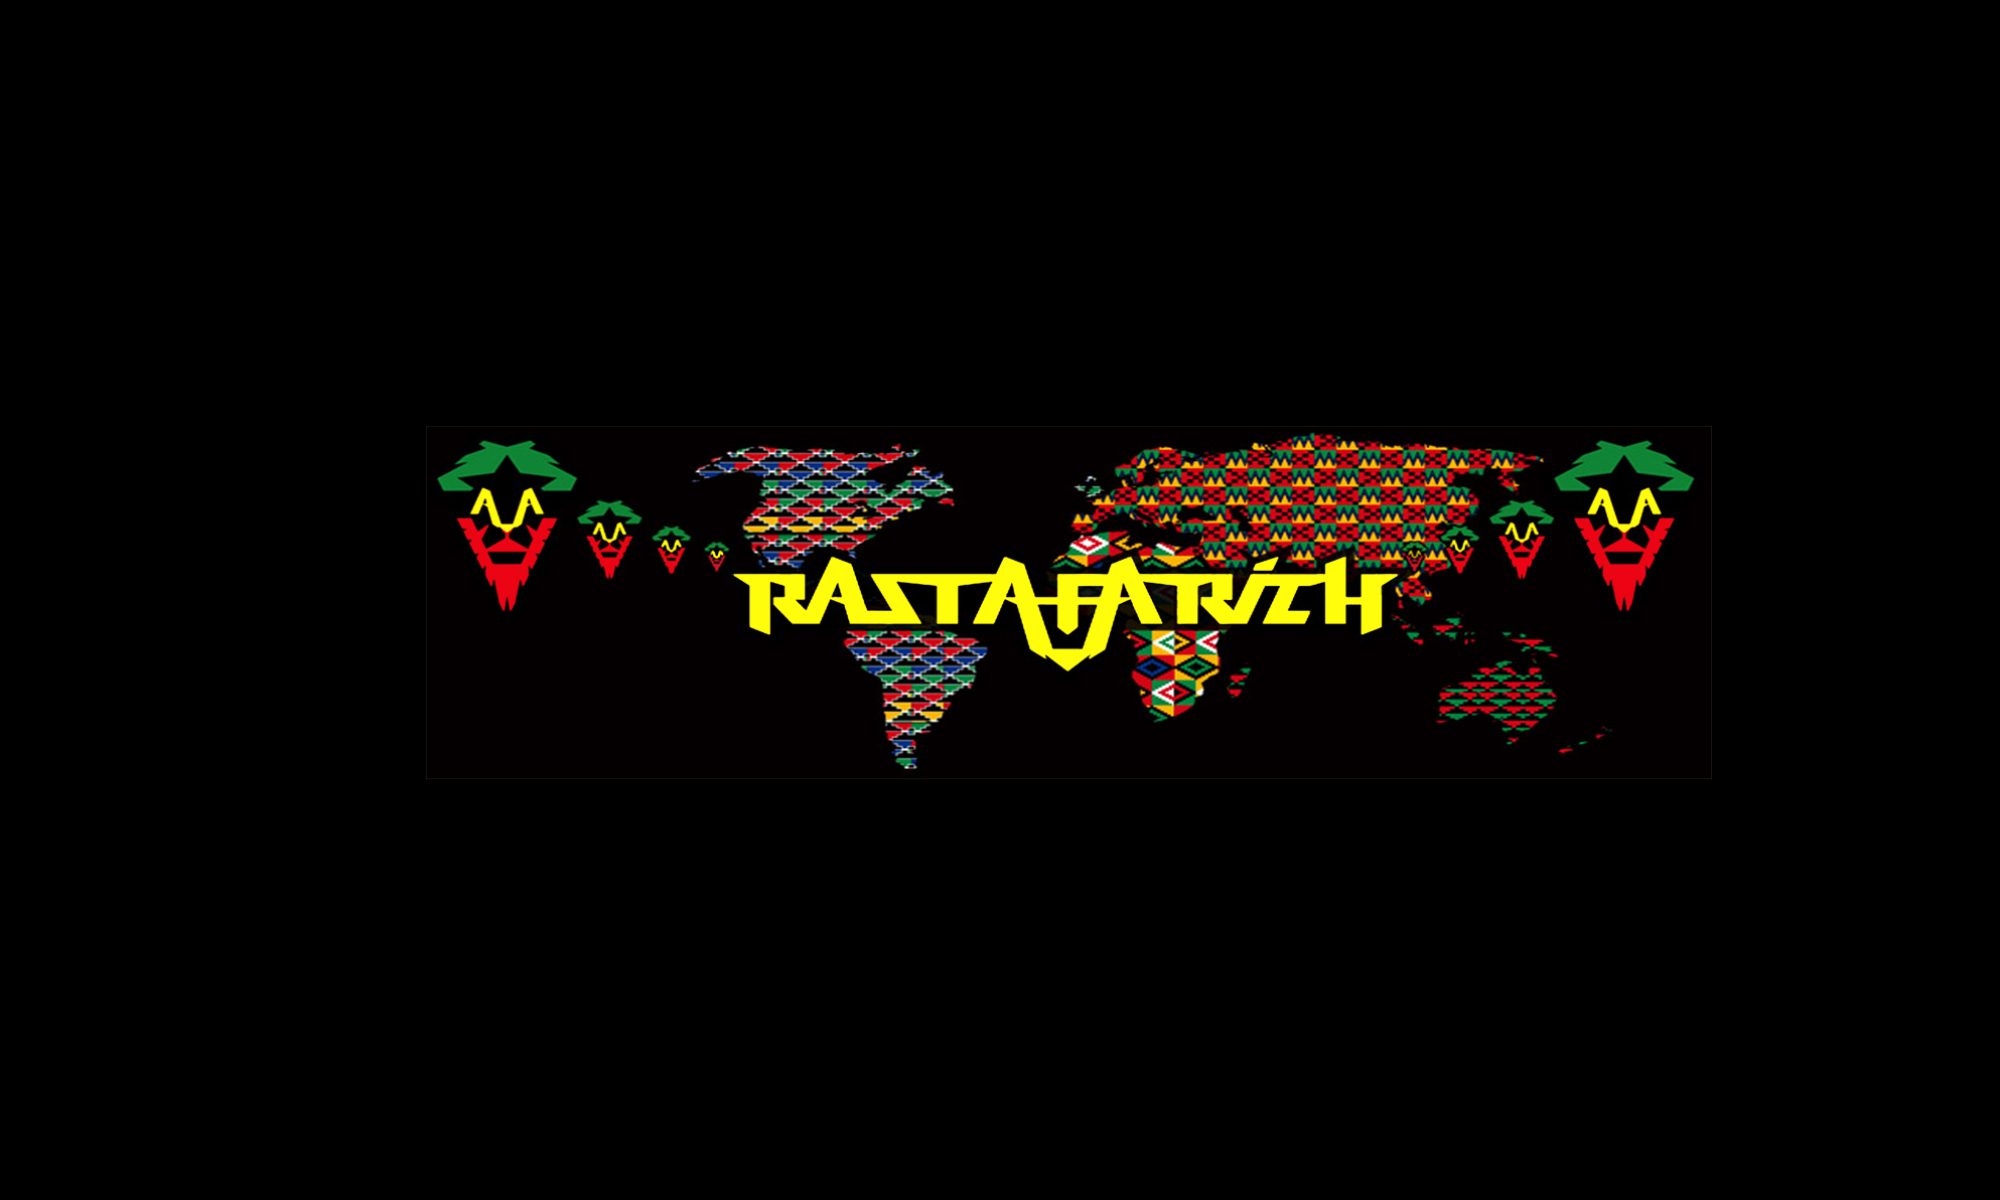 Rastafarich